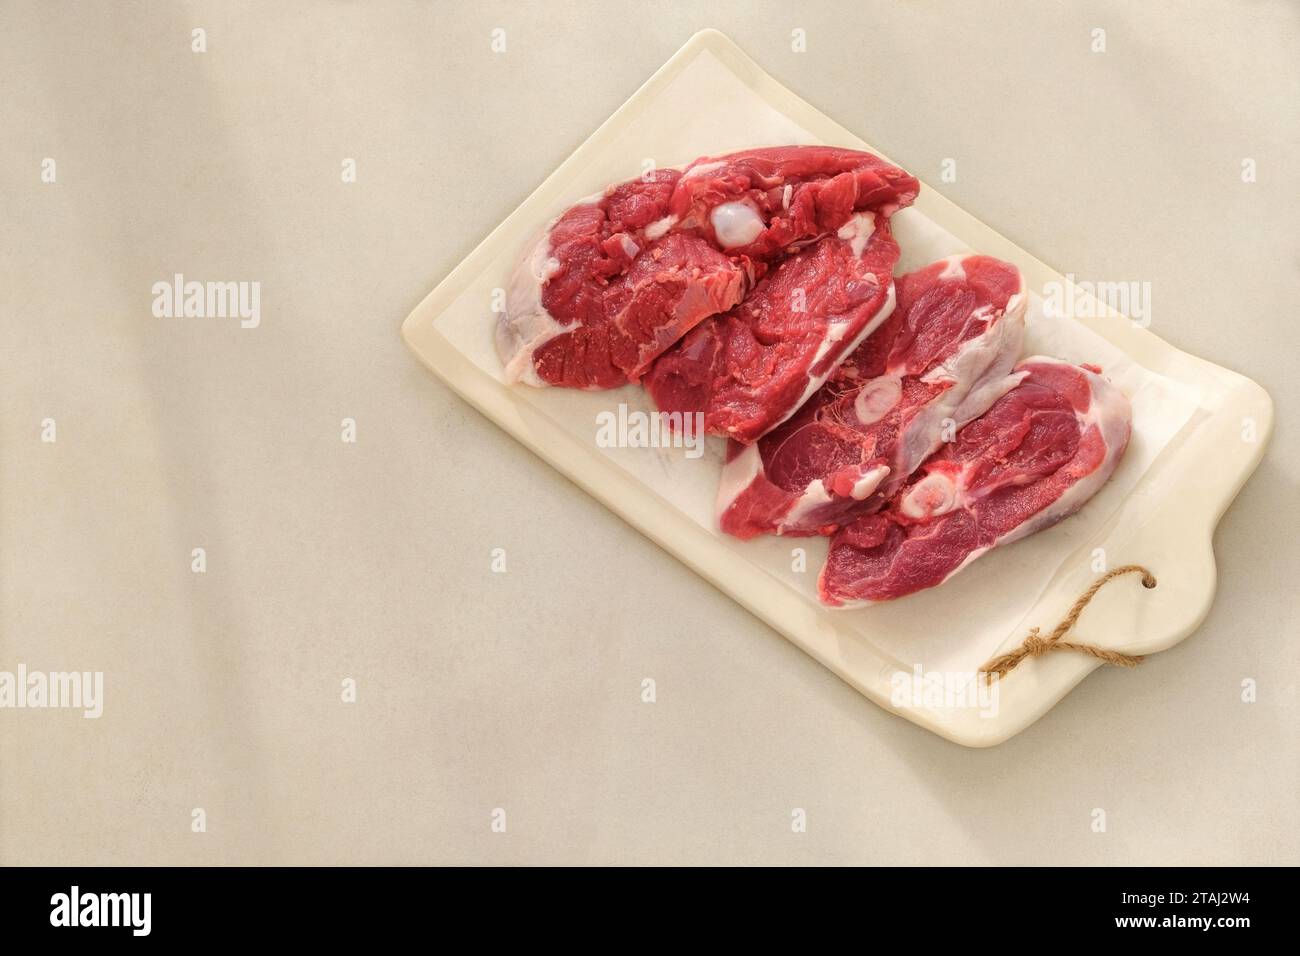 Lammfleisch auf einem Keramikbrett auf beigefarbenem Hintergrund. Fleisch zum Kochen. Hinterer Teil des Schlachtkörpers. Draufsicht. Stockfoto